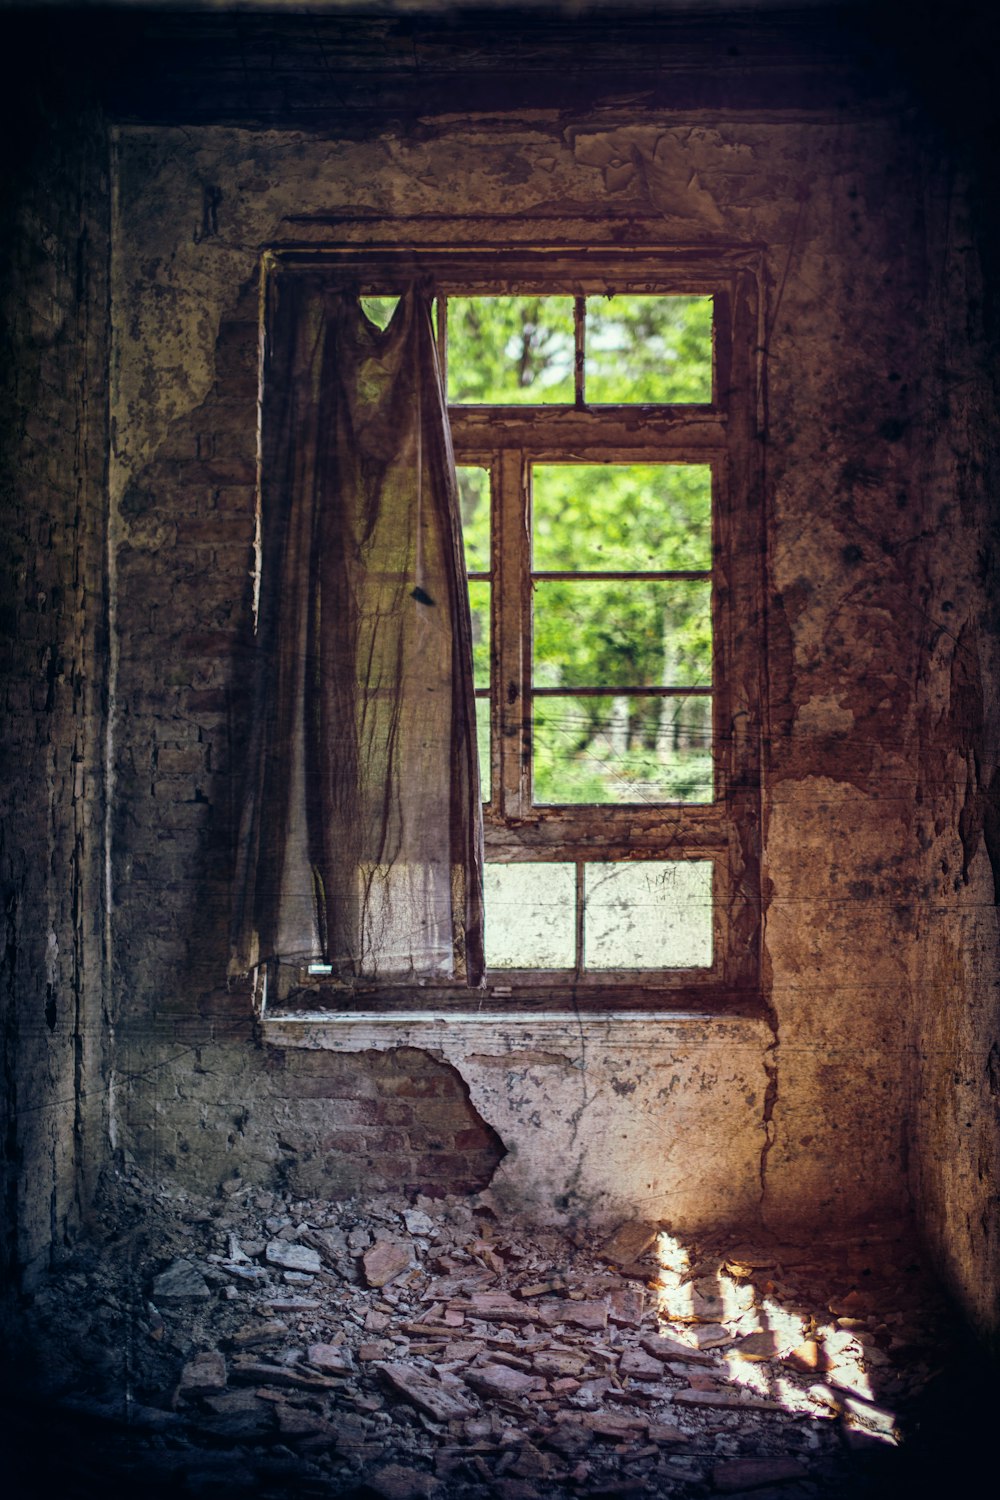 finestra di legno marrone chiusa